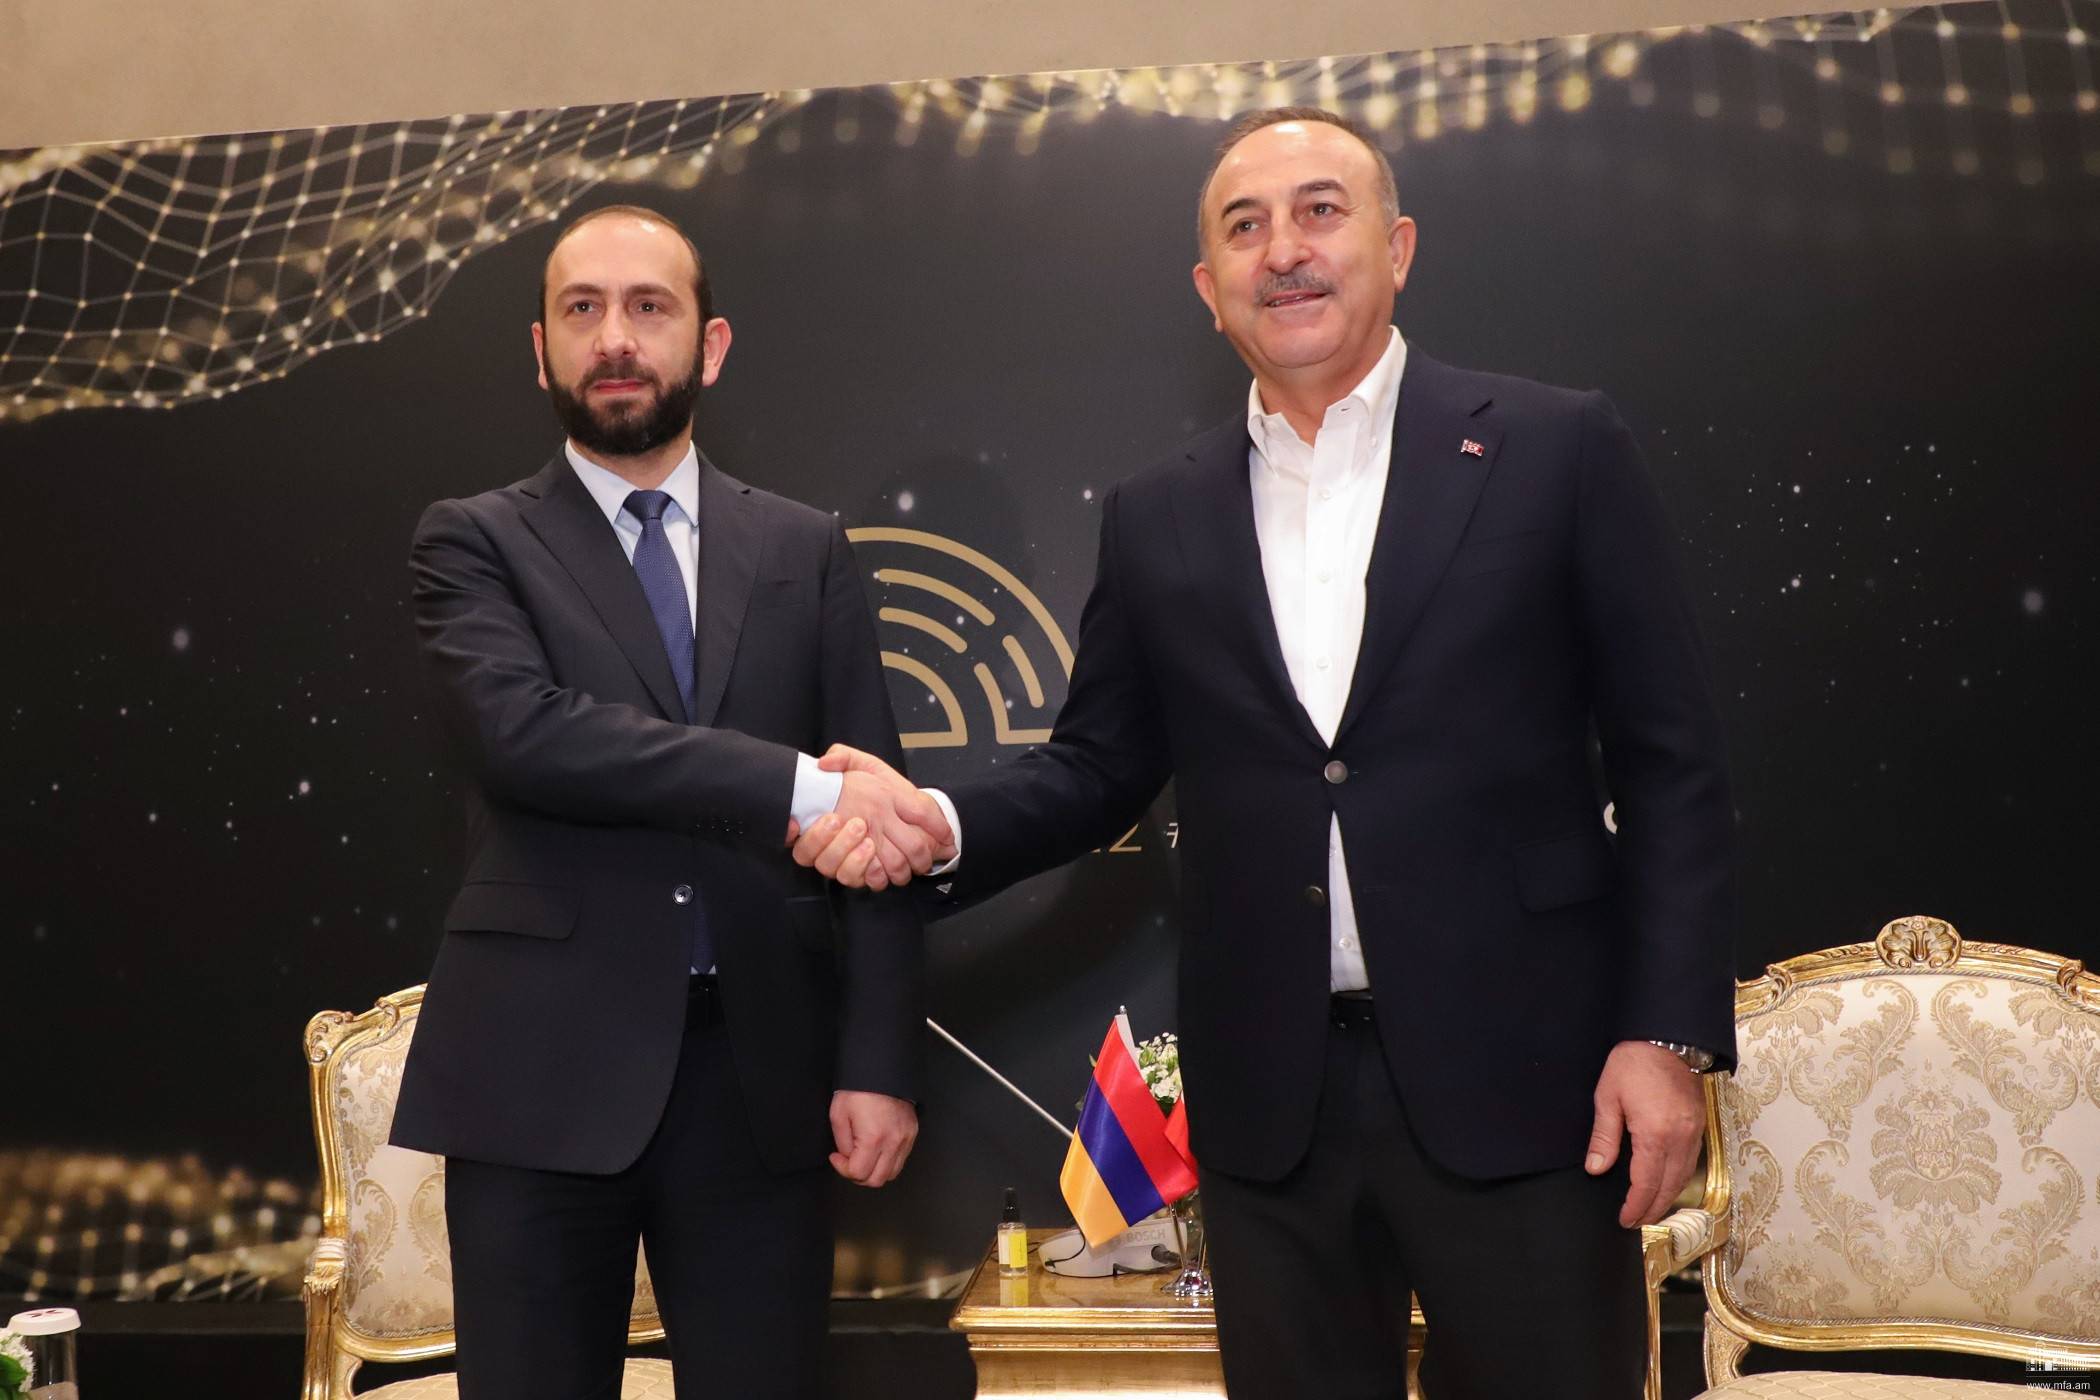 Հայաստանի և Թուրքիայի ԱԳ նախարարները համակարծիք են՝ հարաբերությունների կարգավորումն անհրաժեշտ է ողջ տարածաշրջանի համար